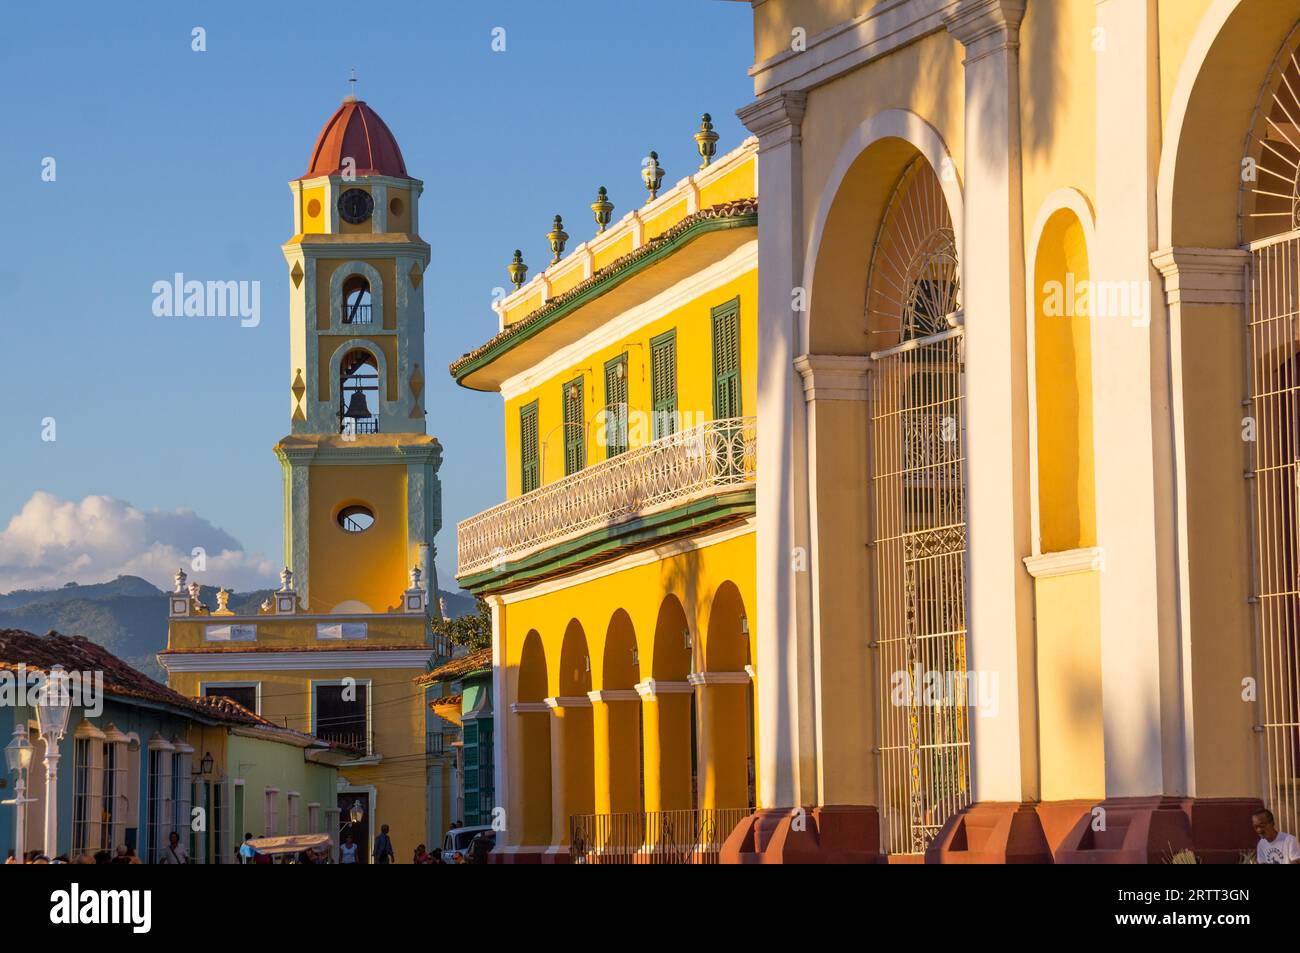 La splendida architettura coloniale dei Caraibi si riflette nella città cubana di Trinidad, Trinidad, CUBA nel dicembre 2015 Foto Stock